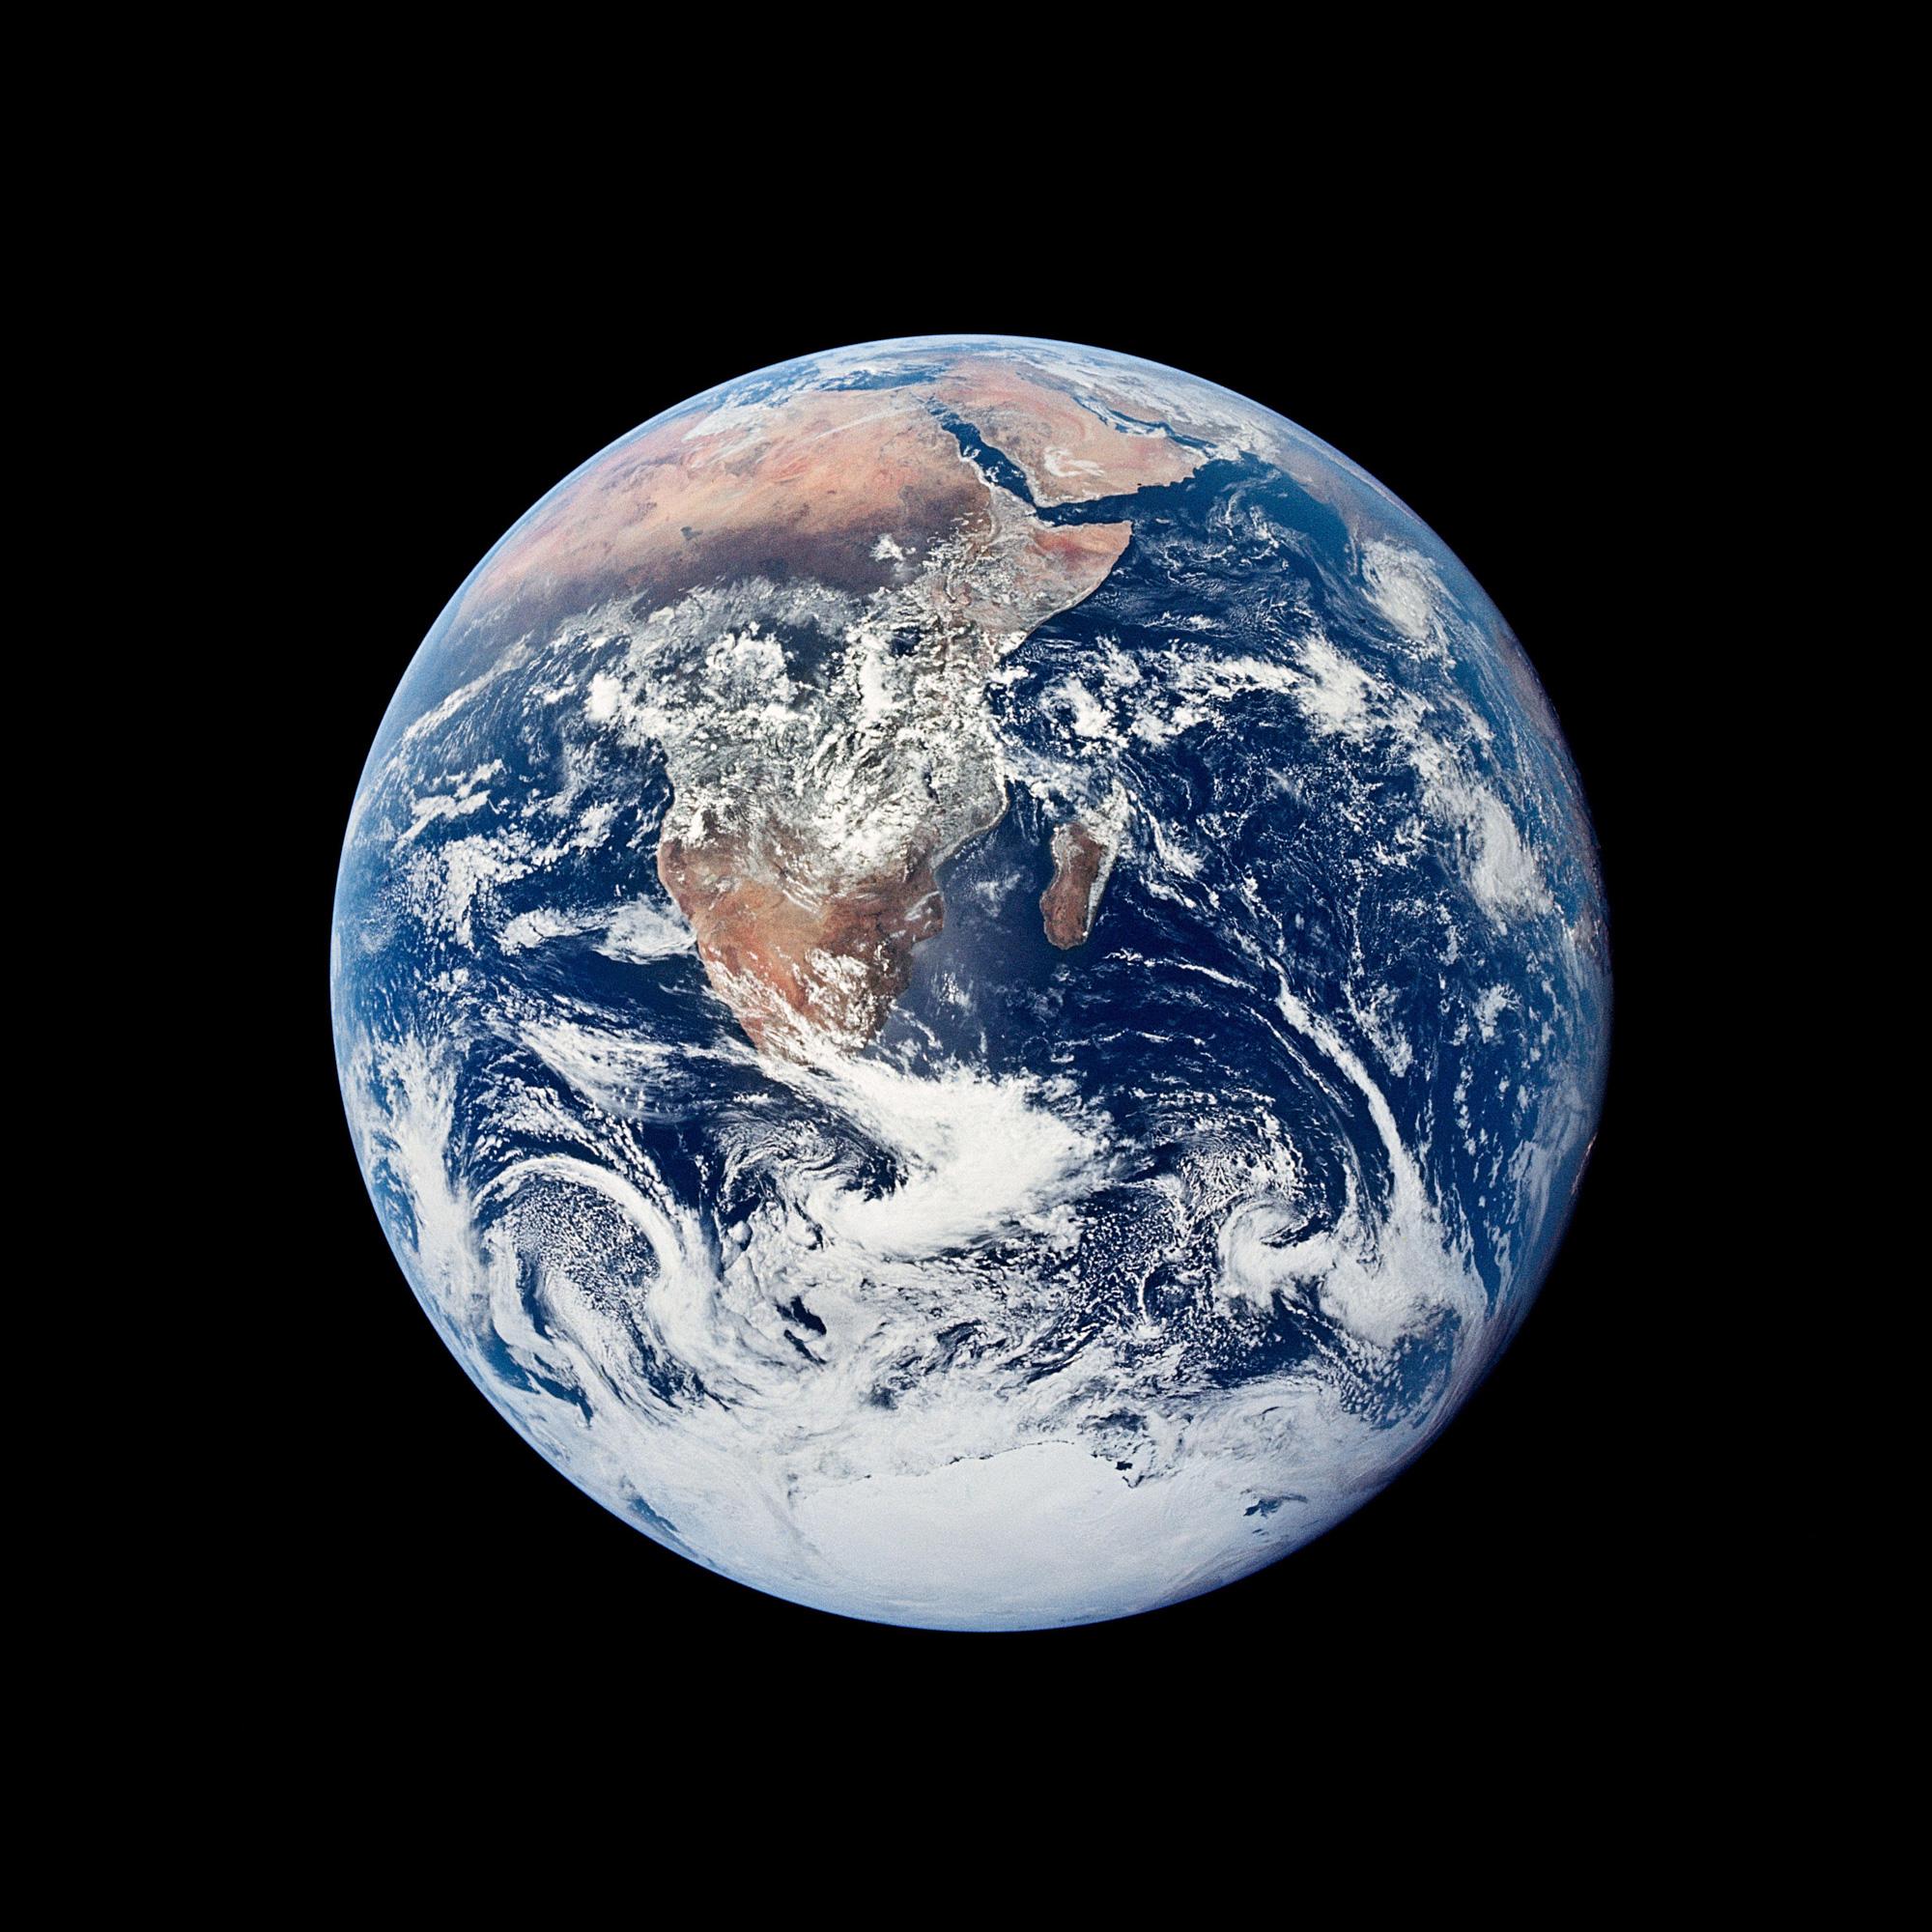 微信启动图片中的地球照片主要包含哪些天气过程